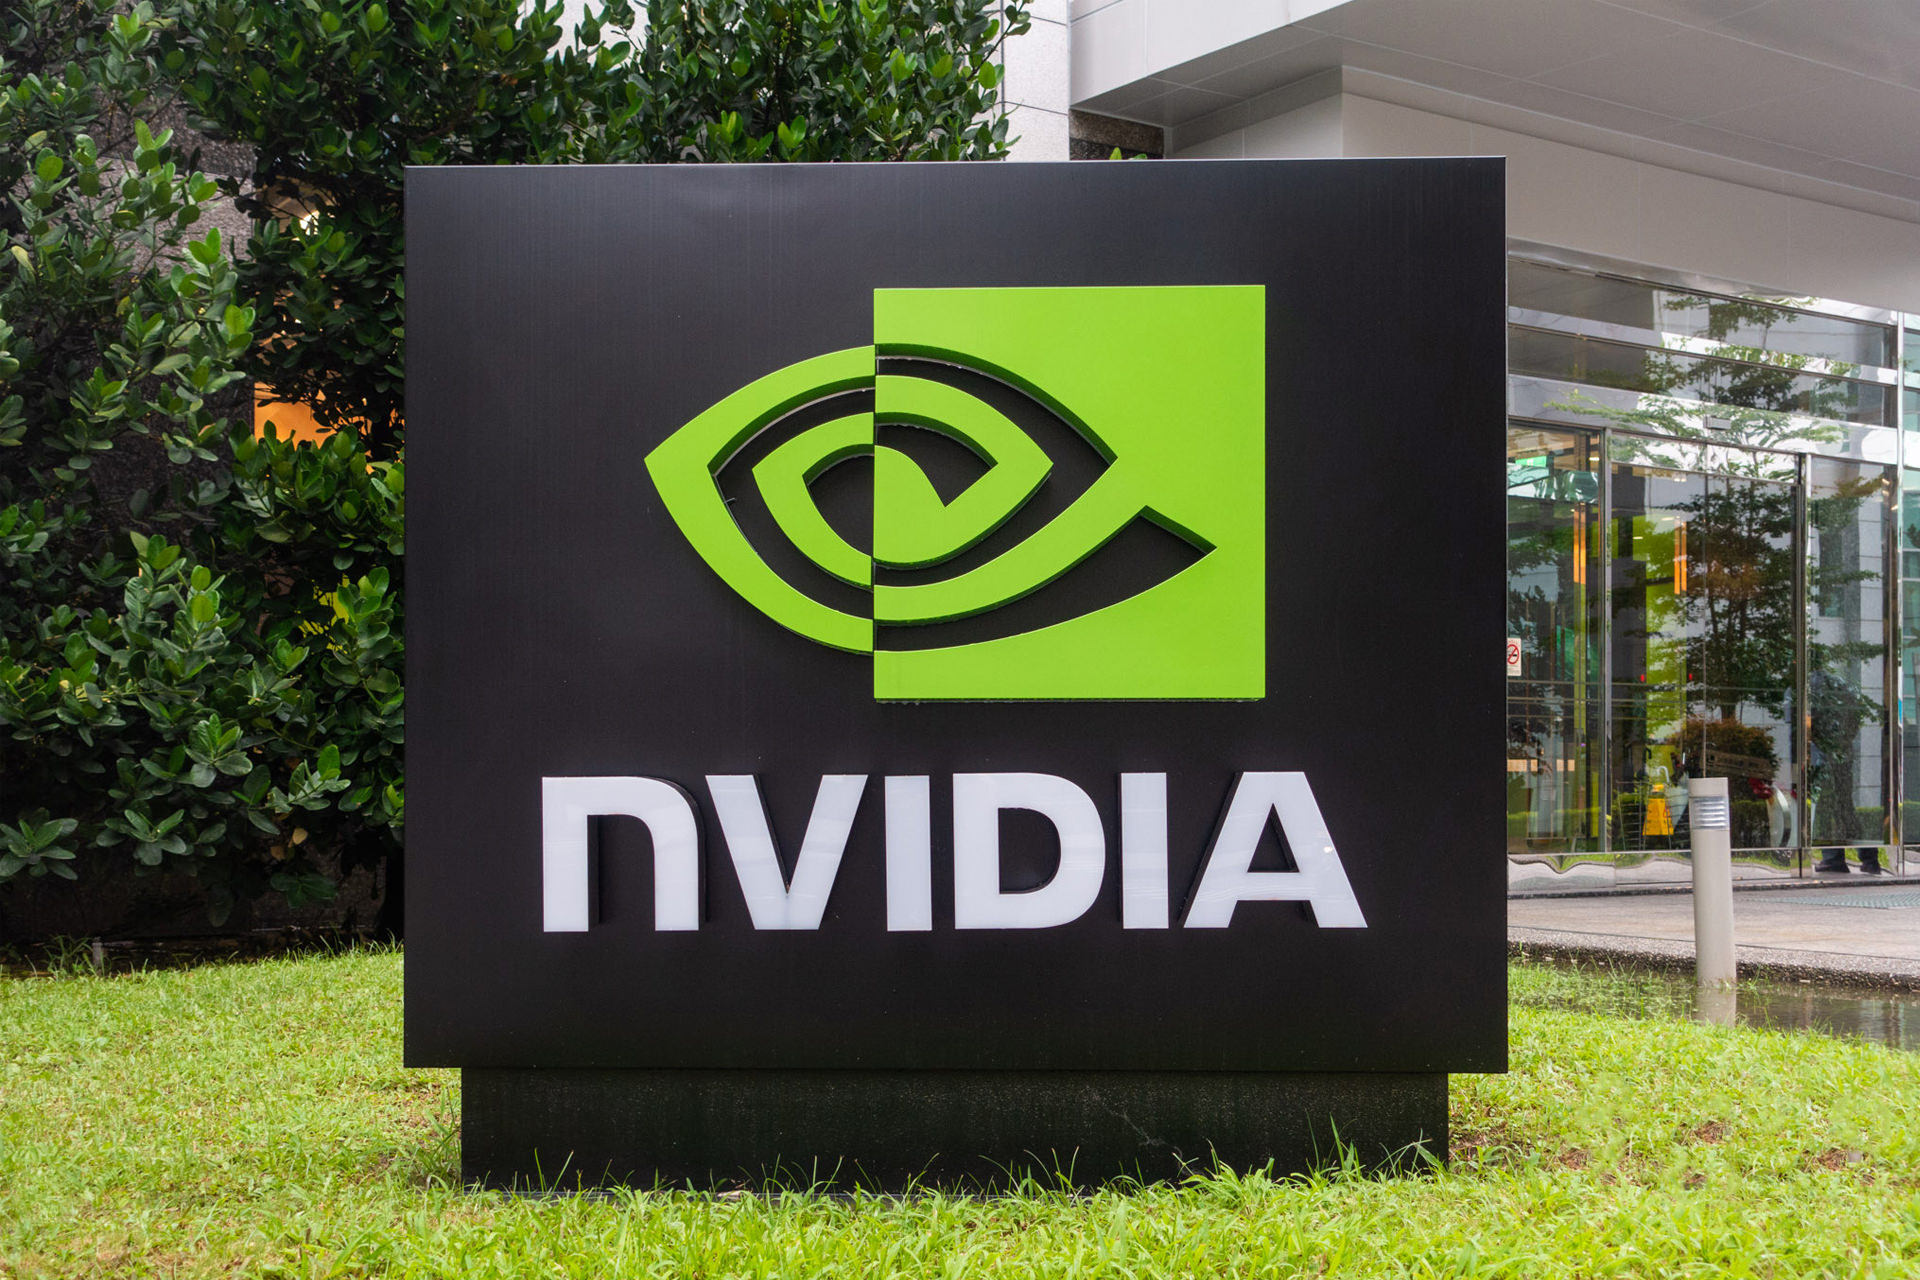 لوگو انویدیا / Nvidia در فضای بیرونی درخت و چمن سبز